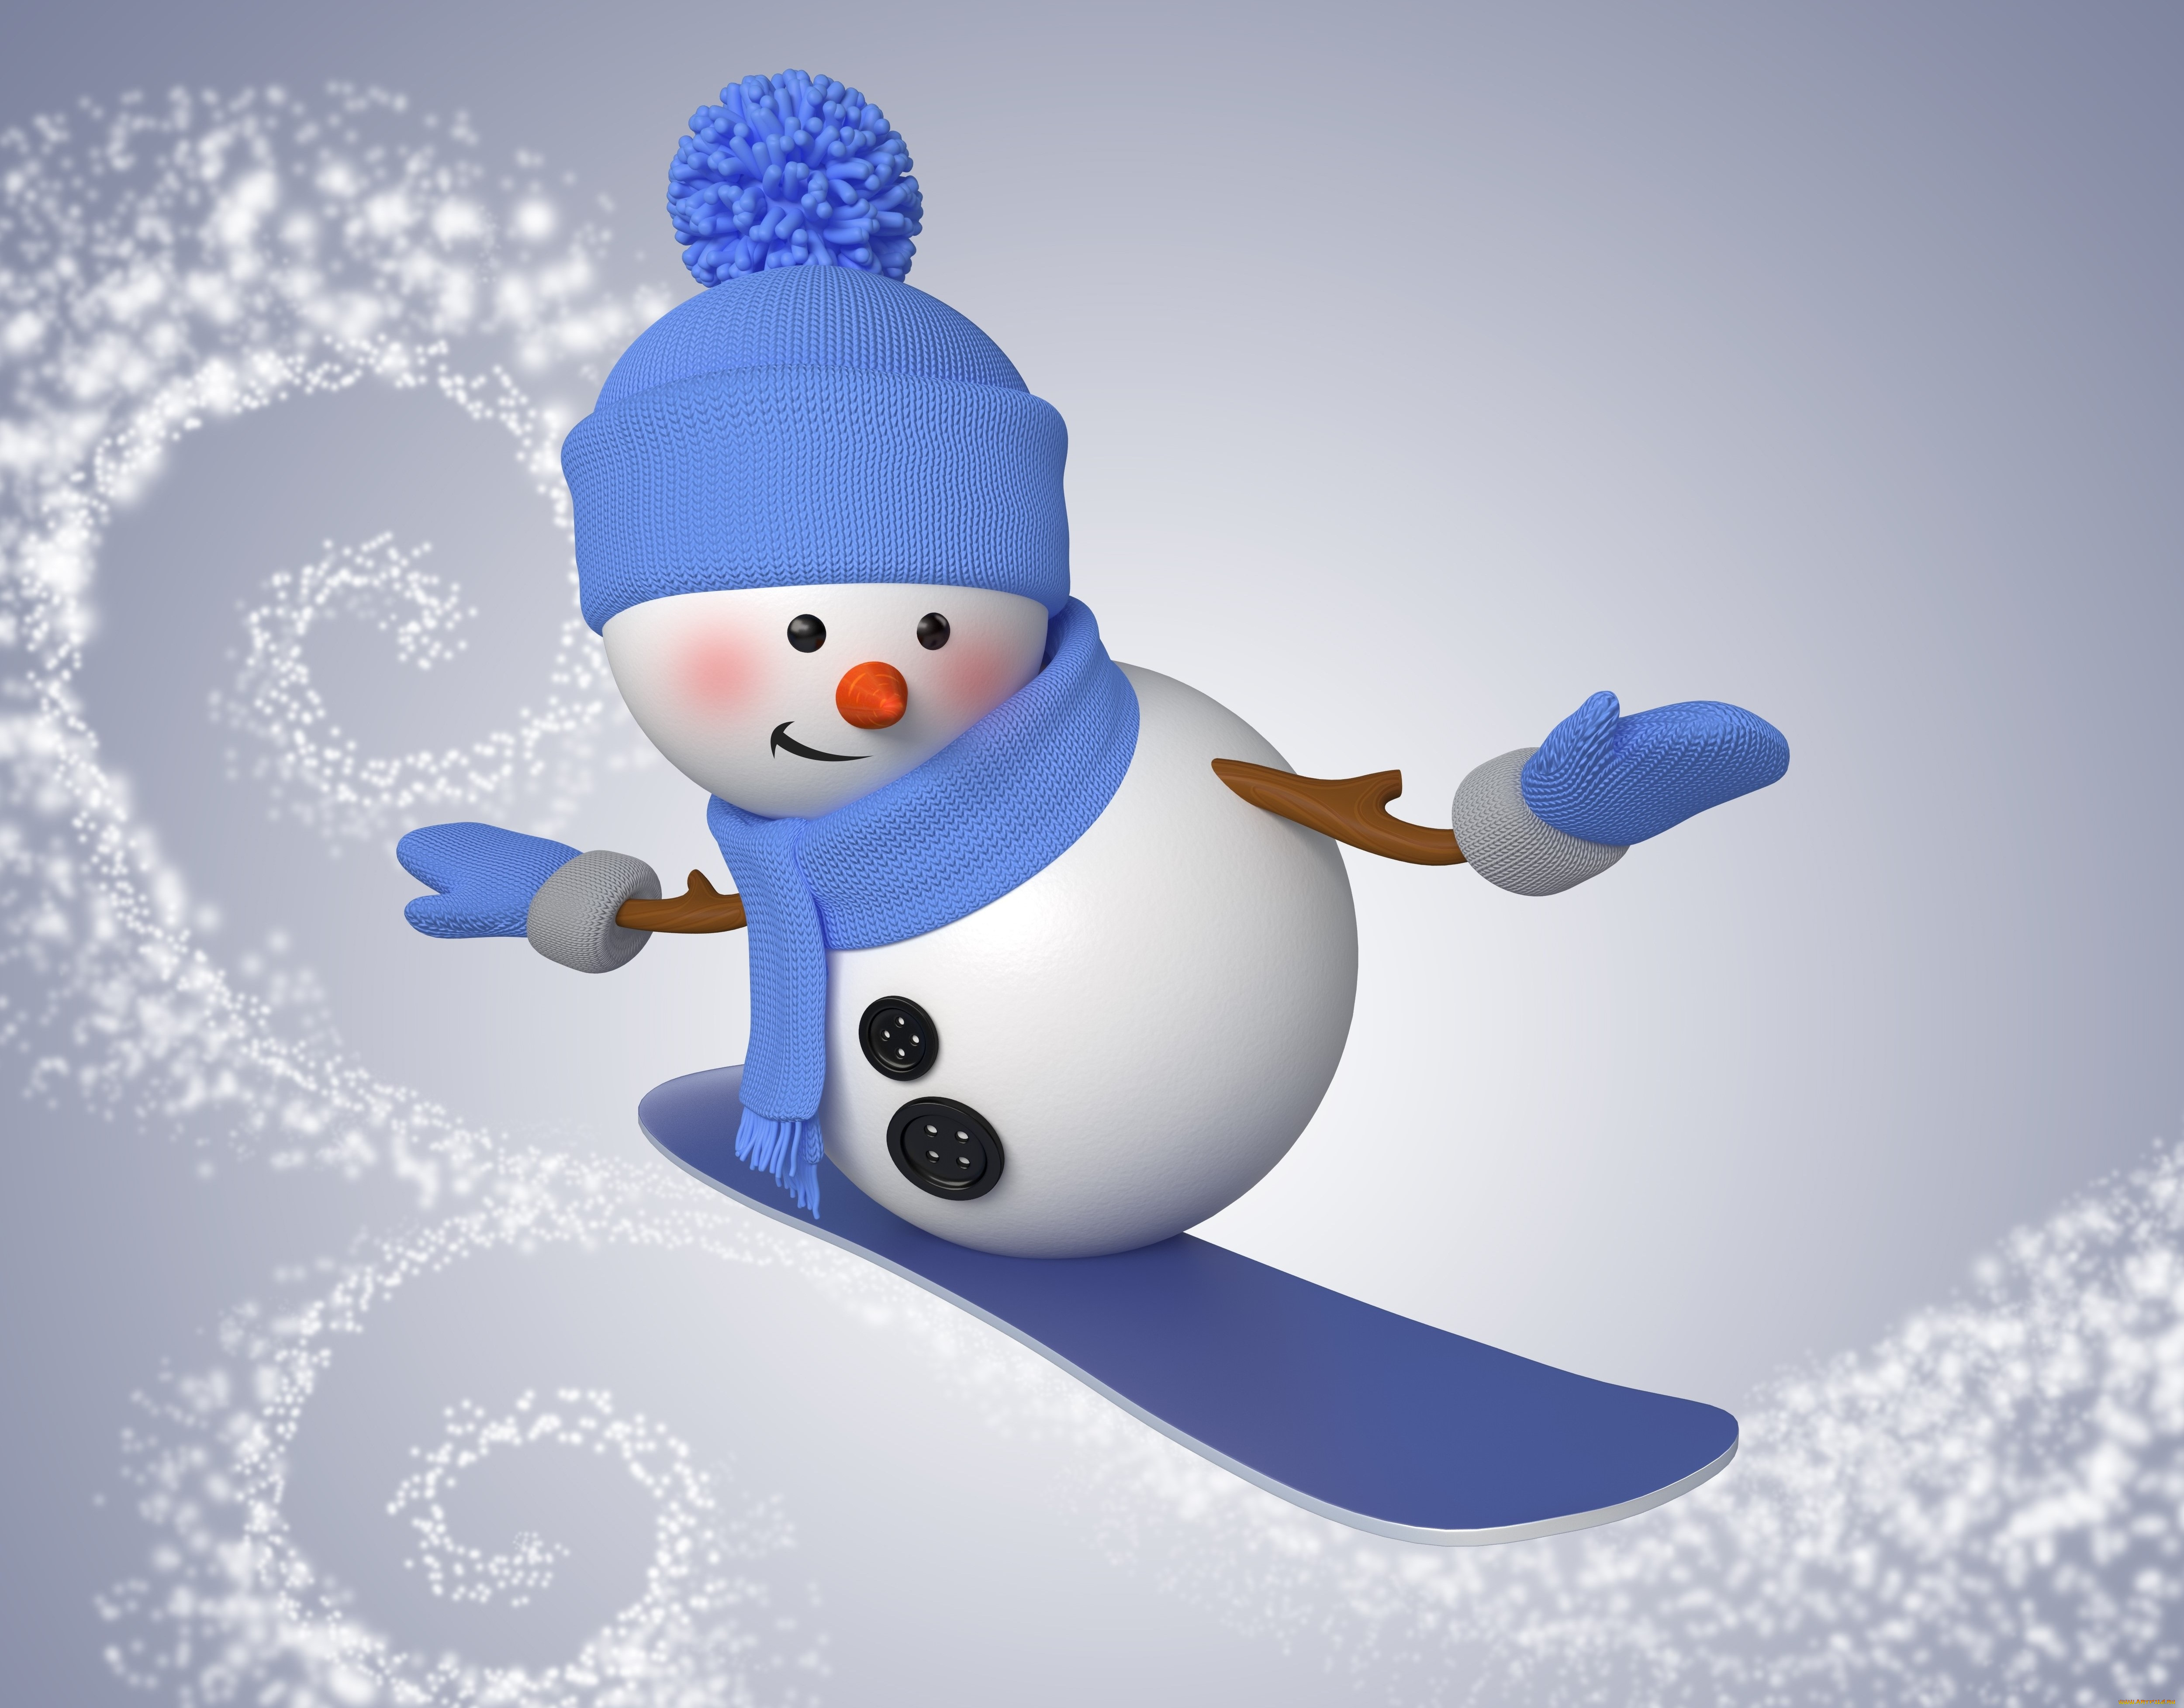 Обои Праздничные 3Д Графика (Новый год), обои для рабочего стола,  фотографии праздничные, 3д графика , новый год, snowman, cute, christmas,  new, year, снеговик, сноуборд, зима, снег Обои для рабочего стола, скачать  обои